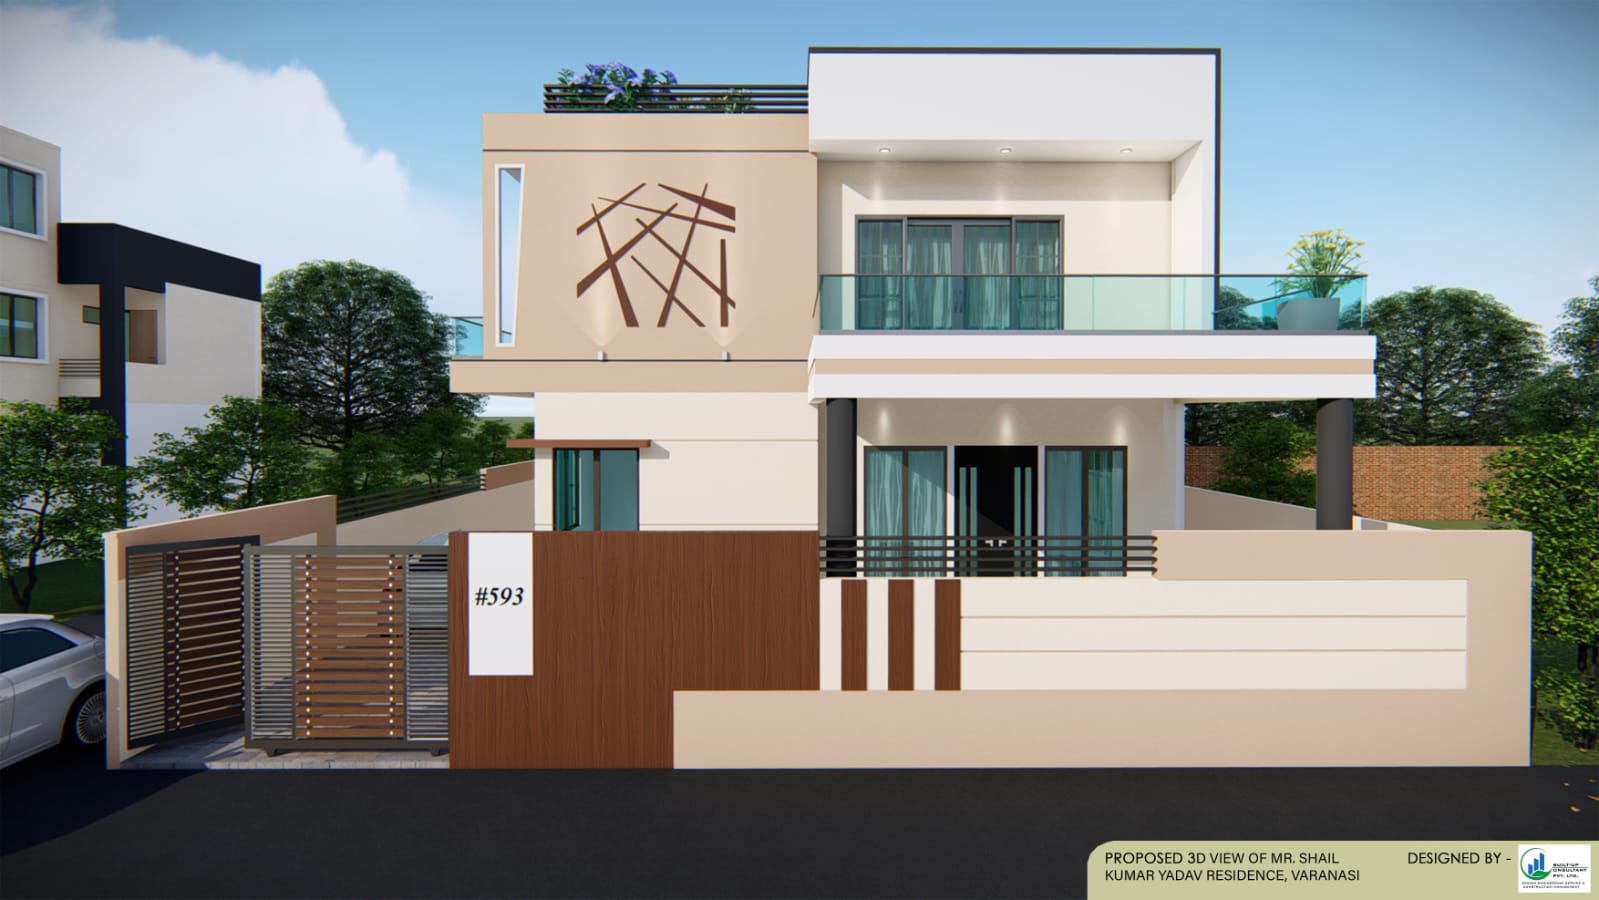 Residence exterior facade design, at Varanasi.